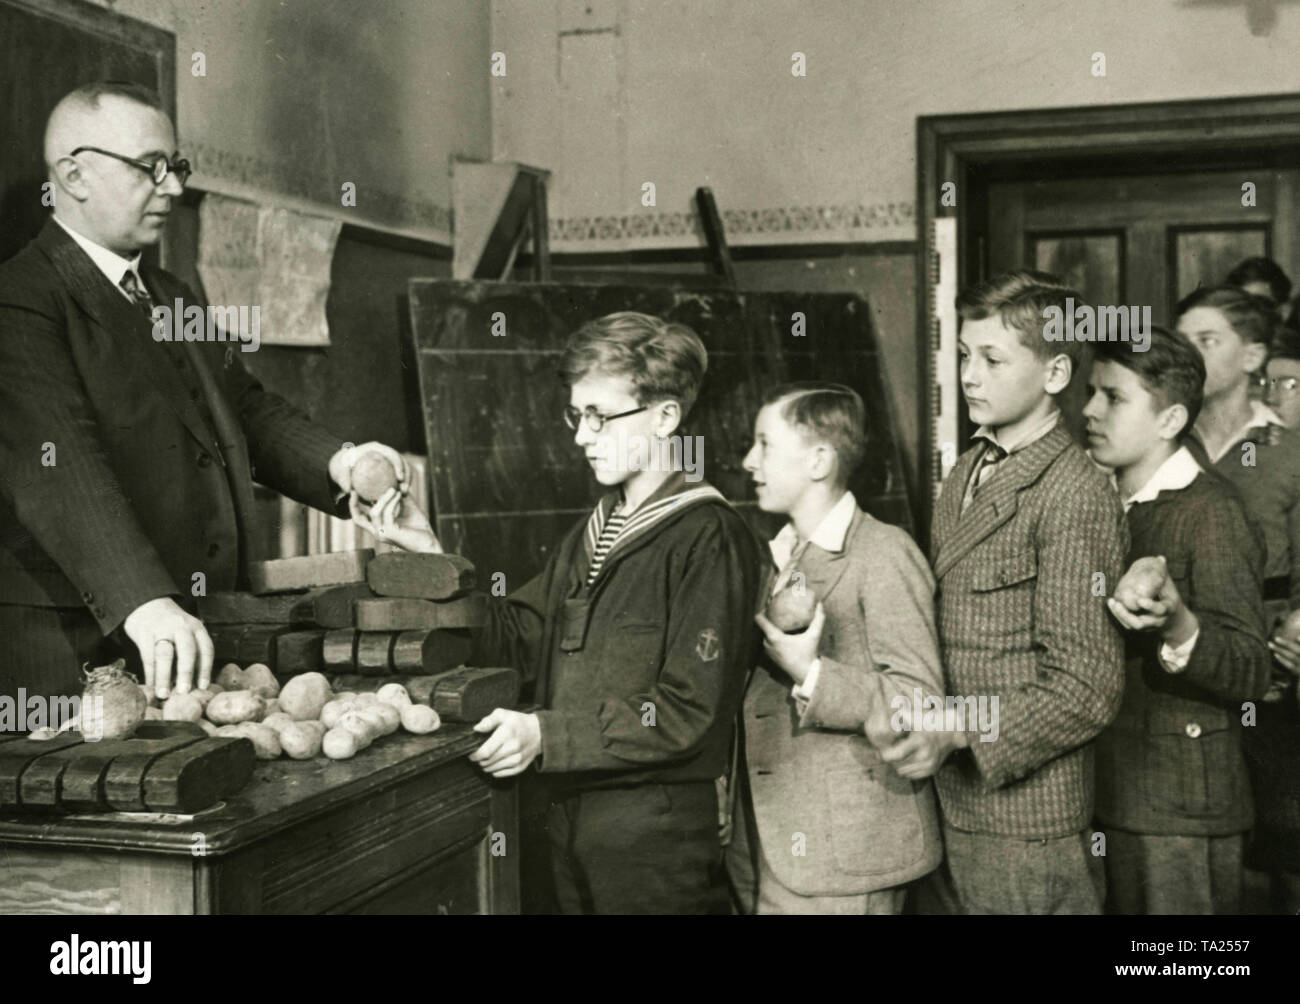 Les élèves de l'Berlin Kaiser-Friedrich-Schule faites un don chaque jour soit une pomme de terre ou un morceau de charbon de bois pressé, qui sont recueillis par l'école et transmise à l'Winterhilfswerk. La photo montre la collecte de dons par l'enseignant avant le début de la leçon. Banque D'Images